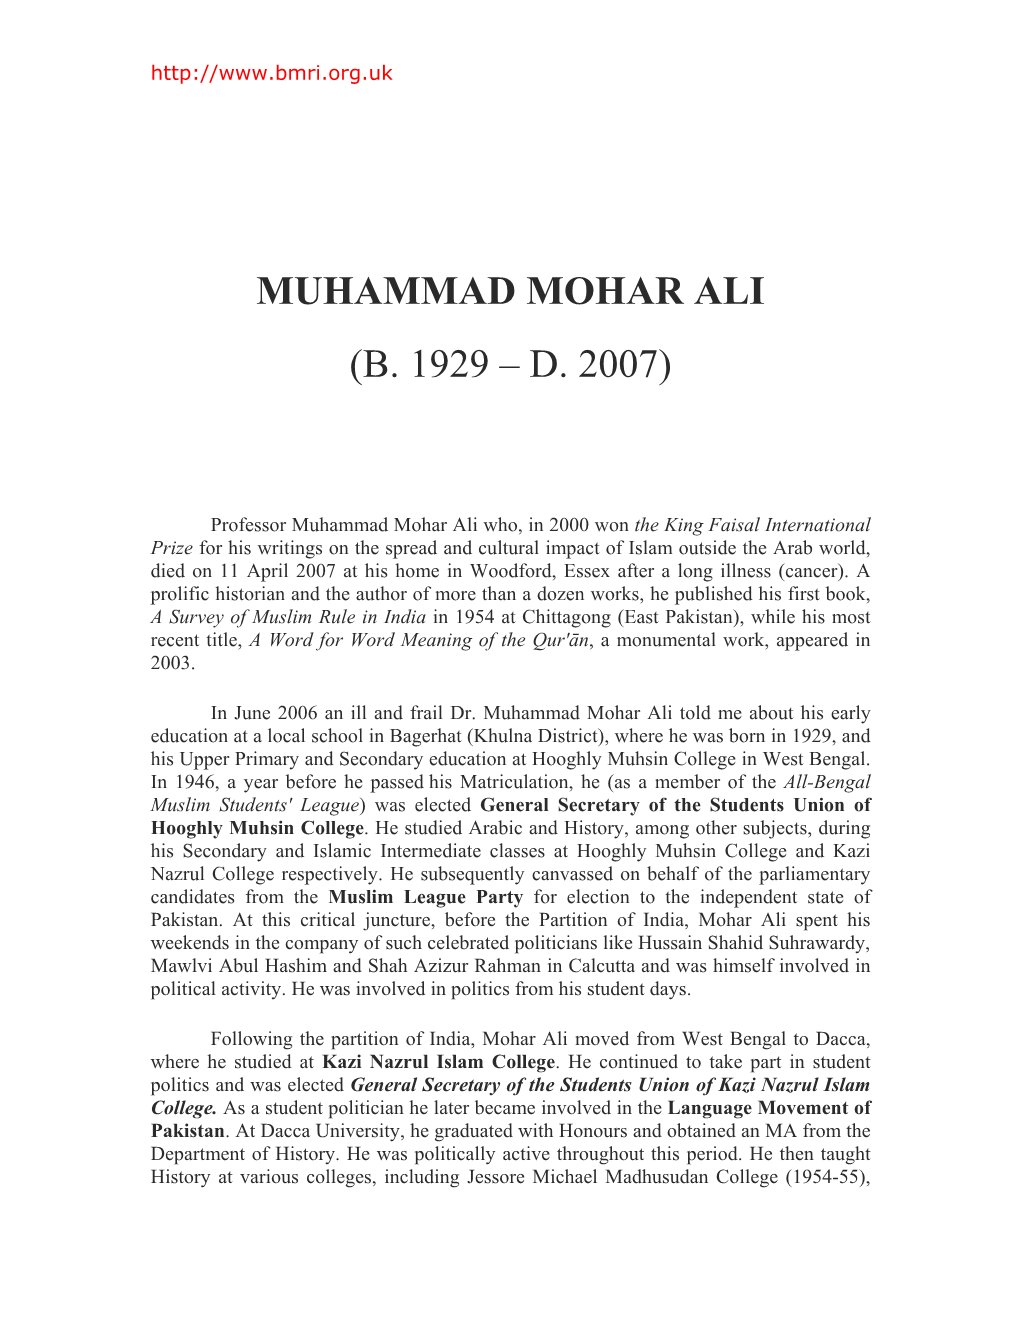 Muhammad Mohar Ali (B. 1929 – D. 2007)